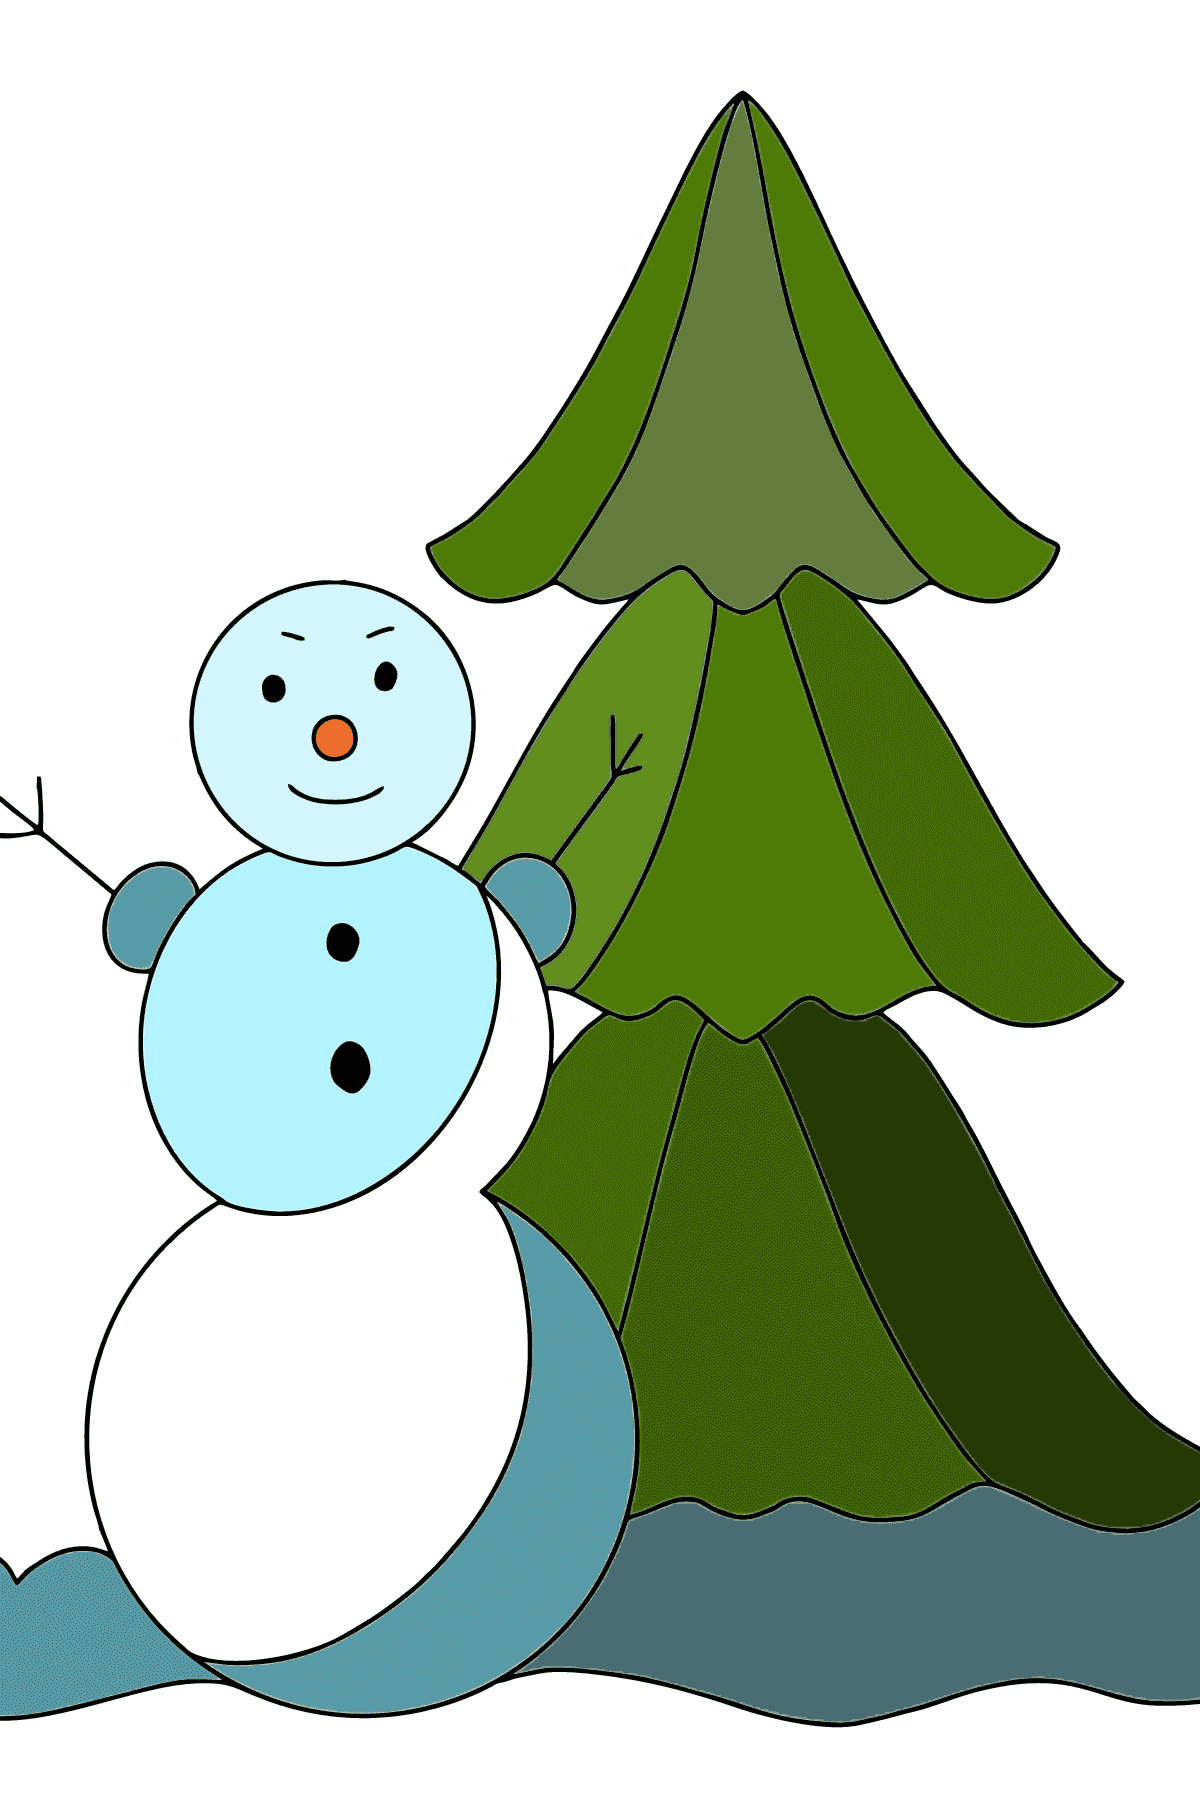 Disegno di pupazzo di neve da colorare per bambini - Disegni da colorare per bambini